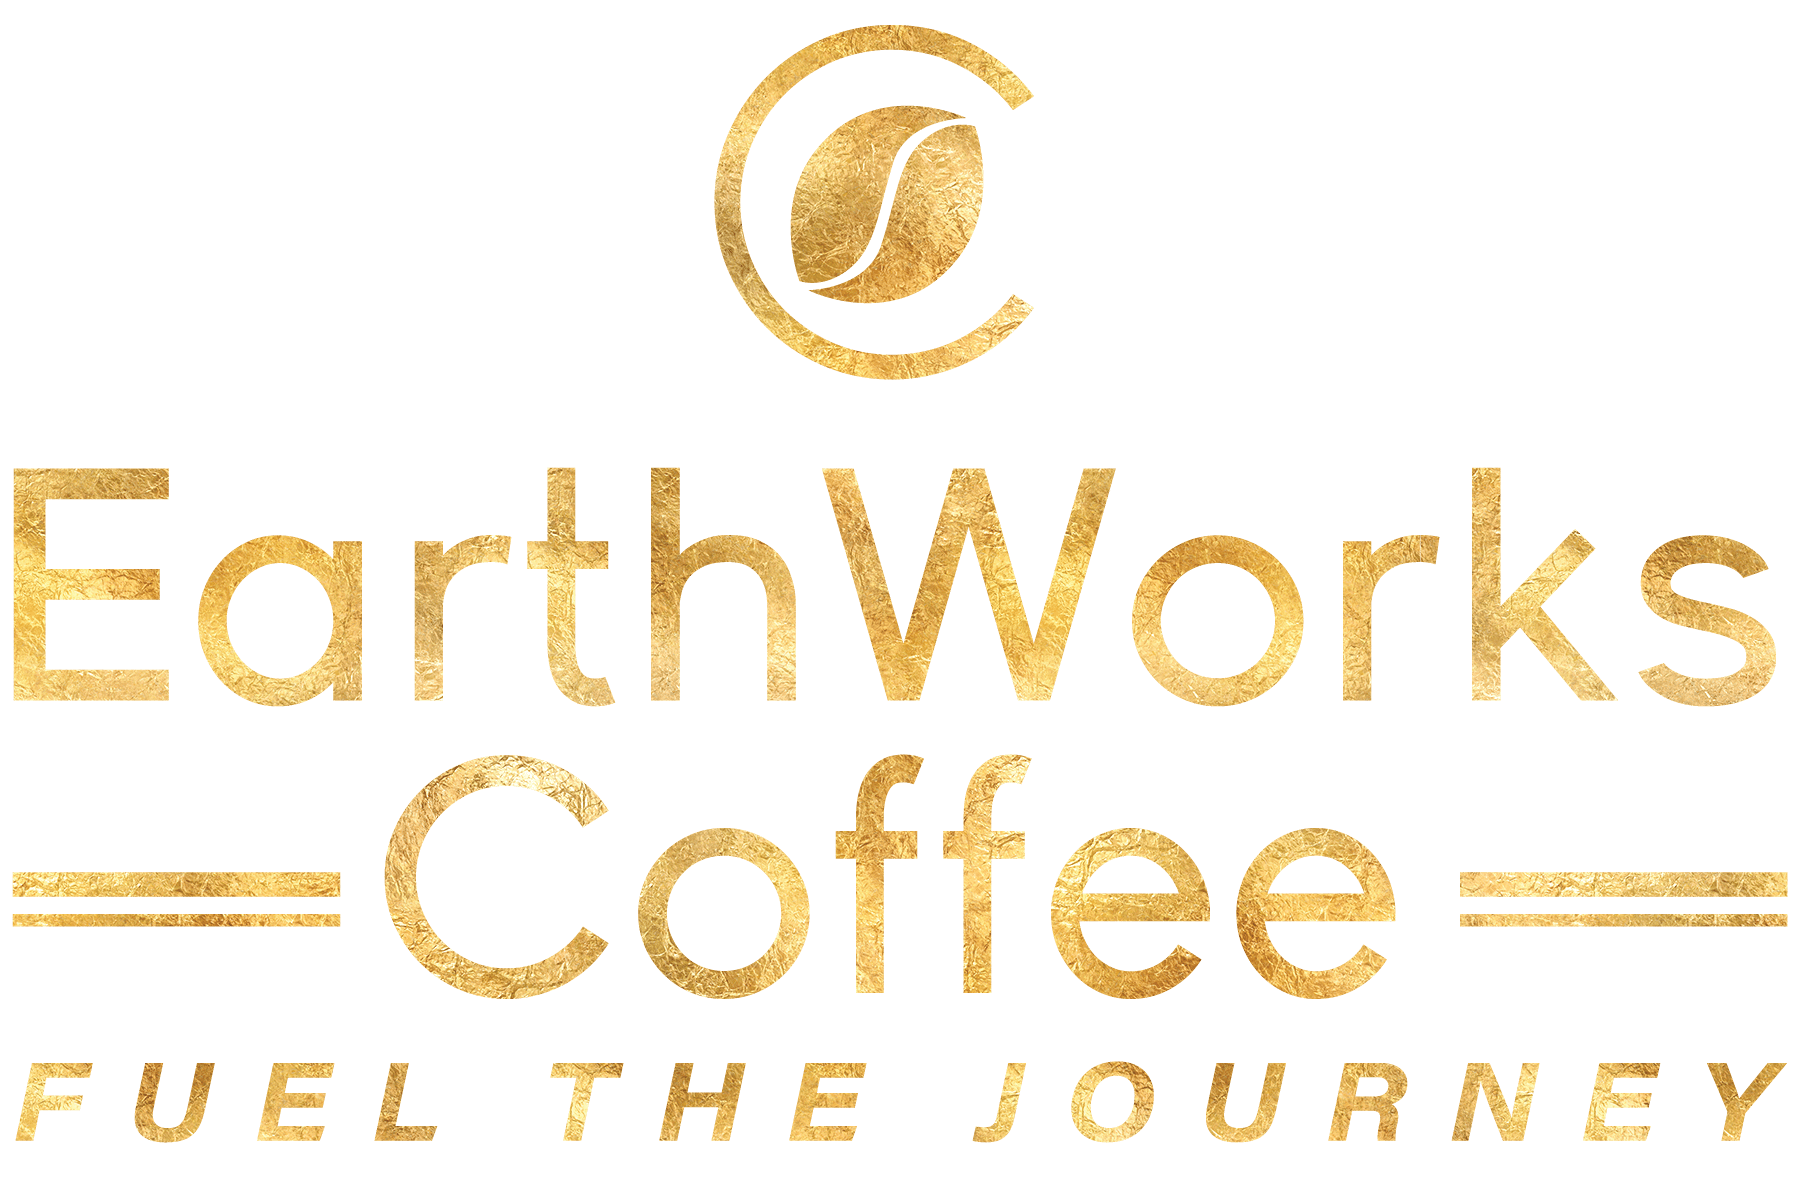 www.earthworkscoffee.com